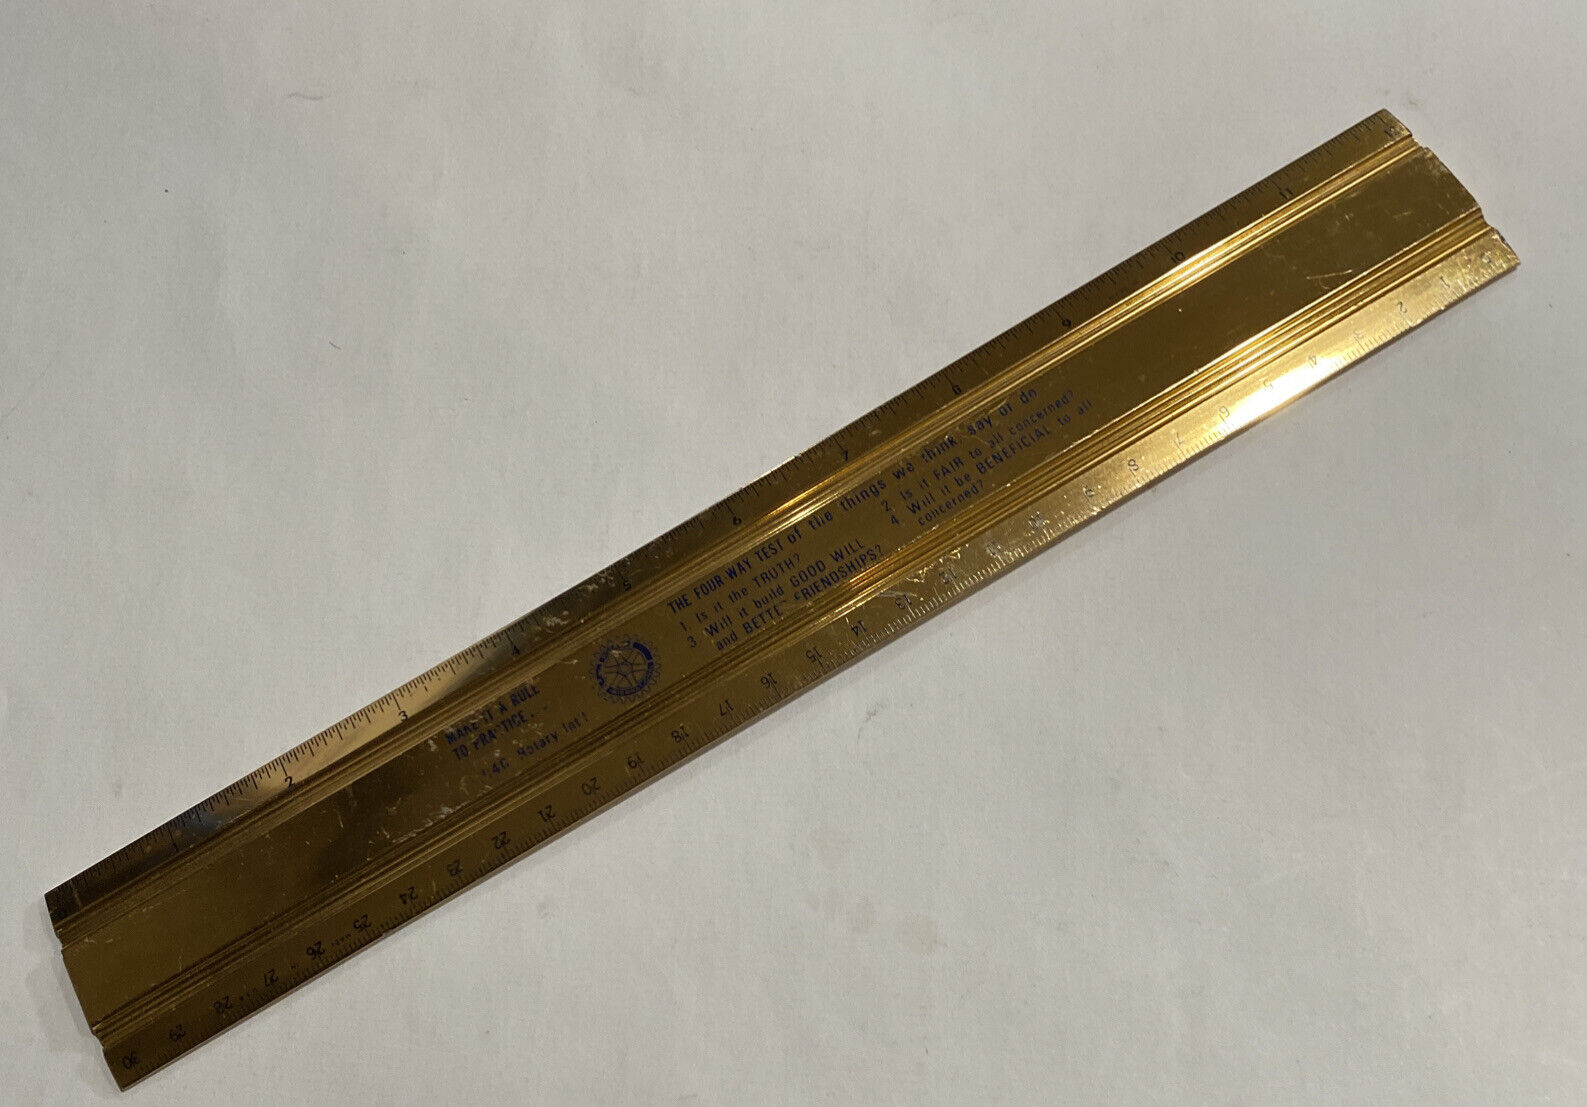 Vintage Metal Ruler. Make it a Ruler to Practice advertisment